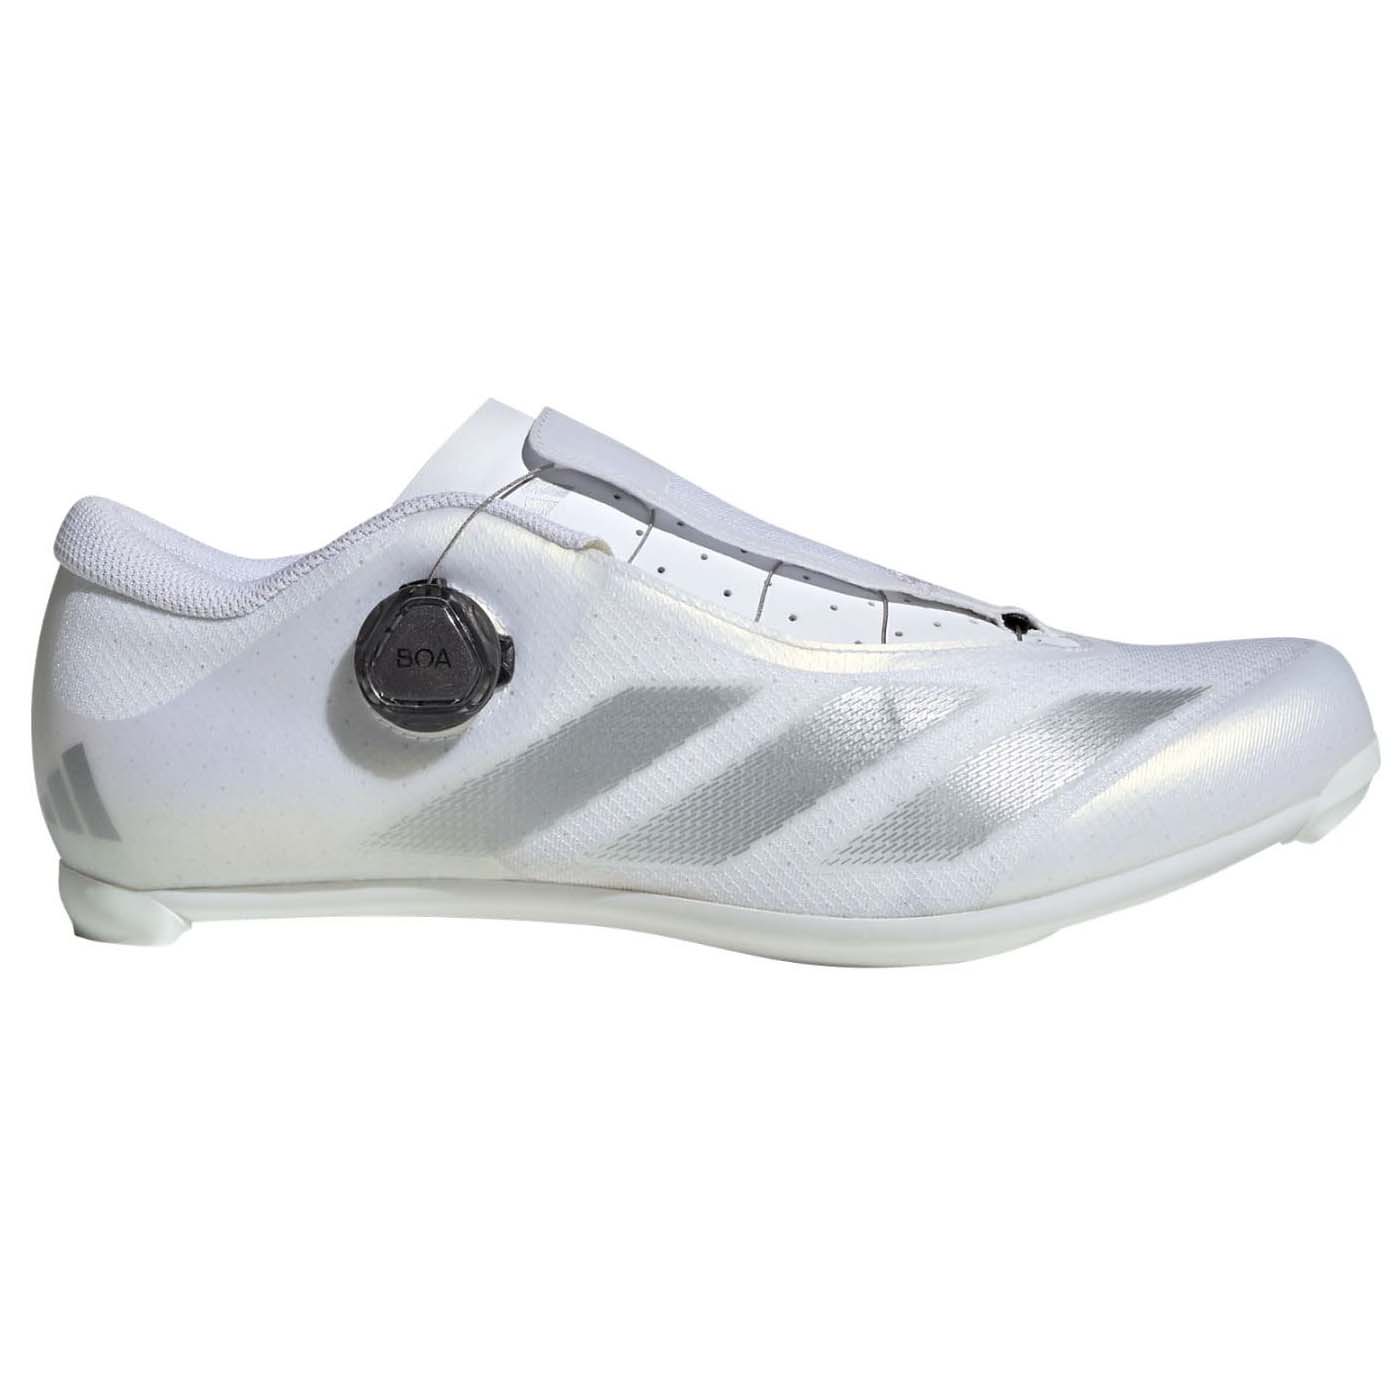 Кроссовки Adidas Performance Cycling, белый/серебристый/черный кроссовки adidas performance zapatillas bordeaux